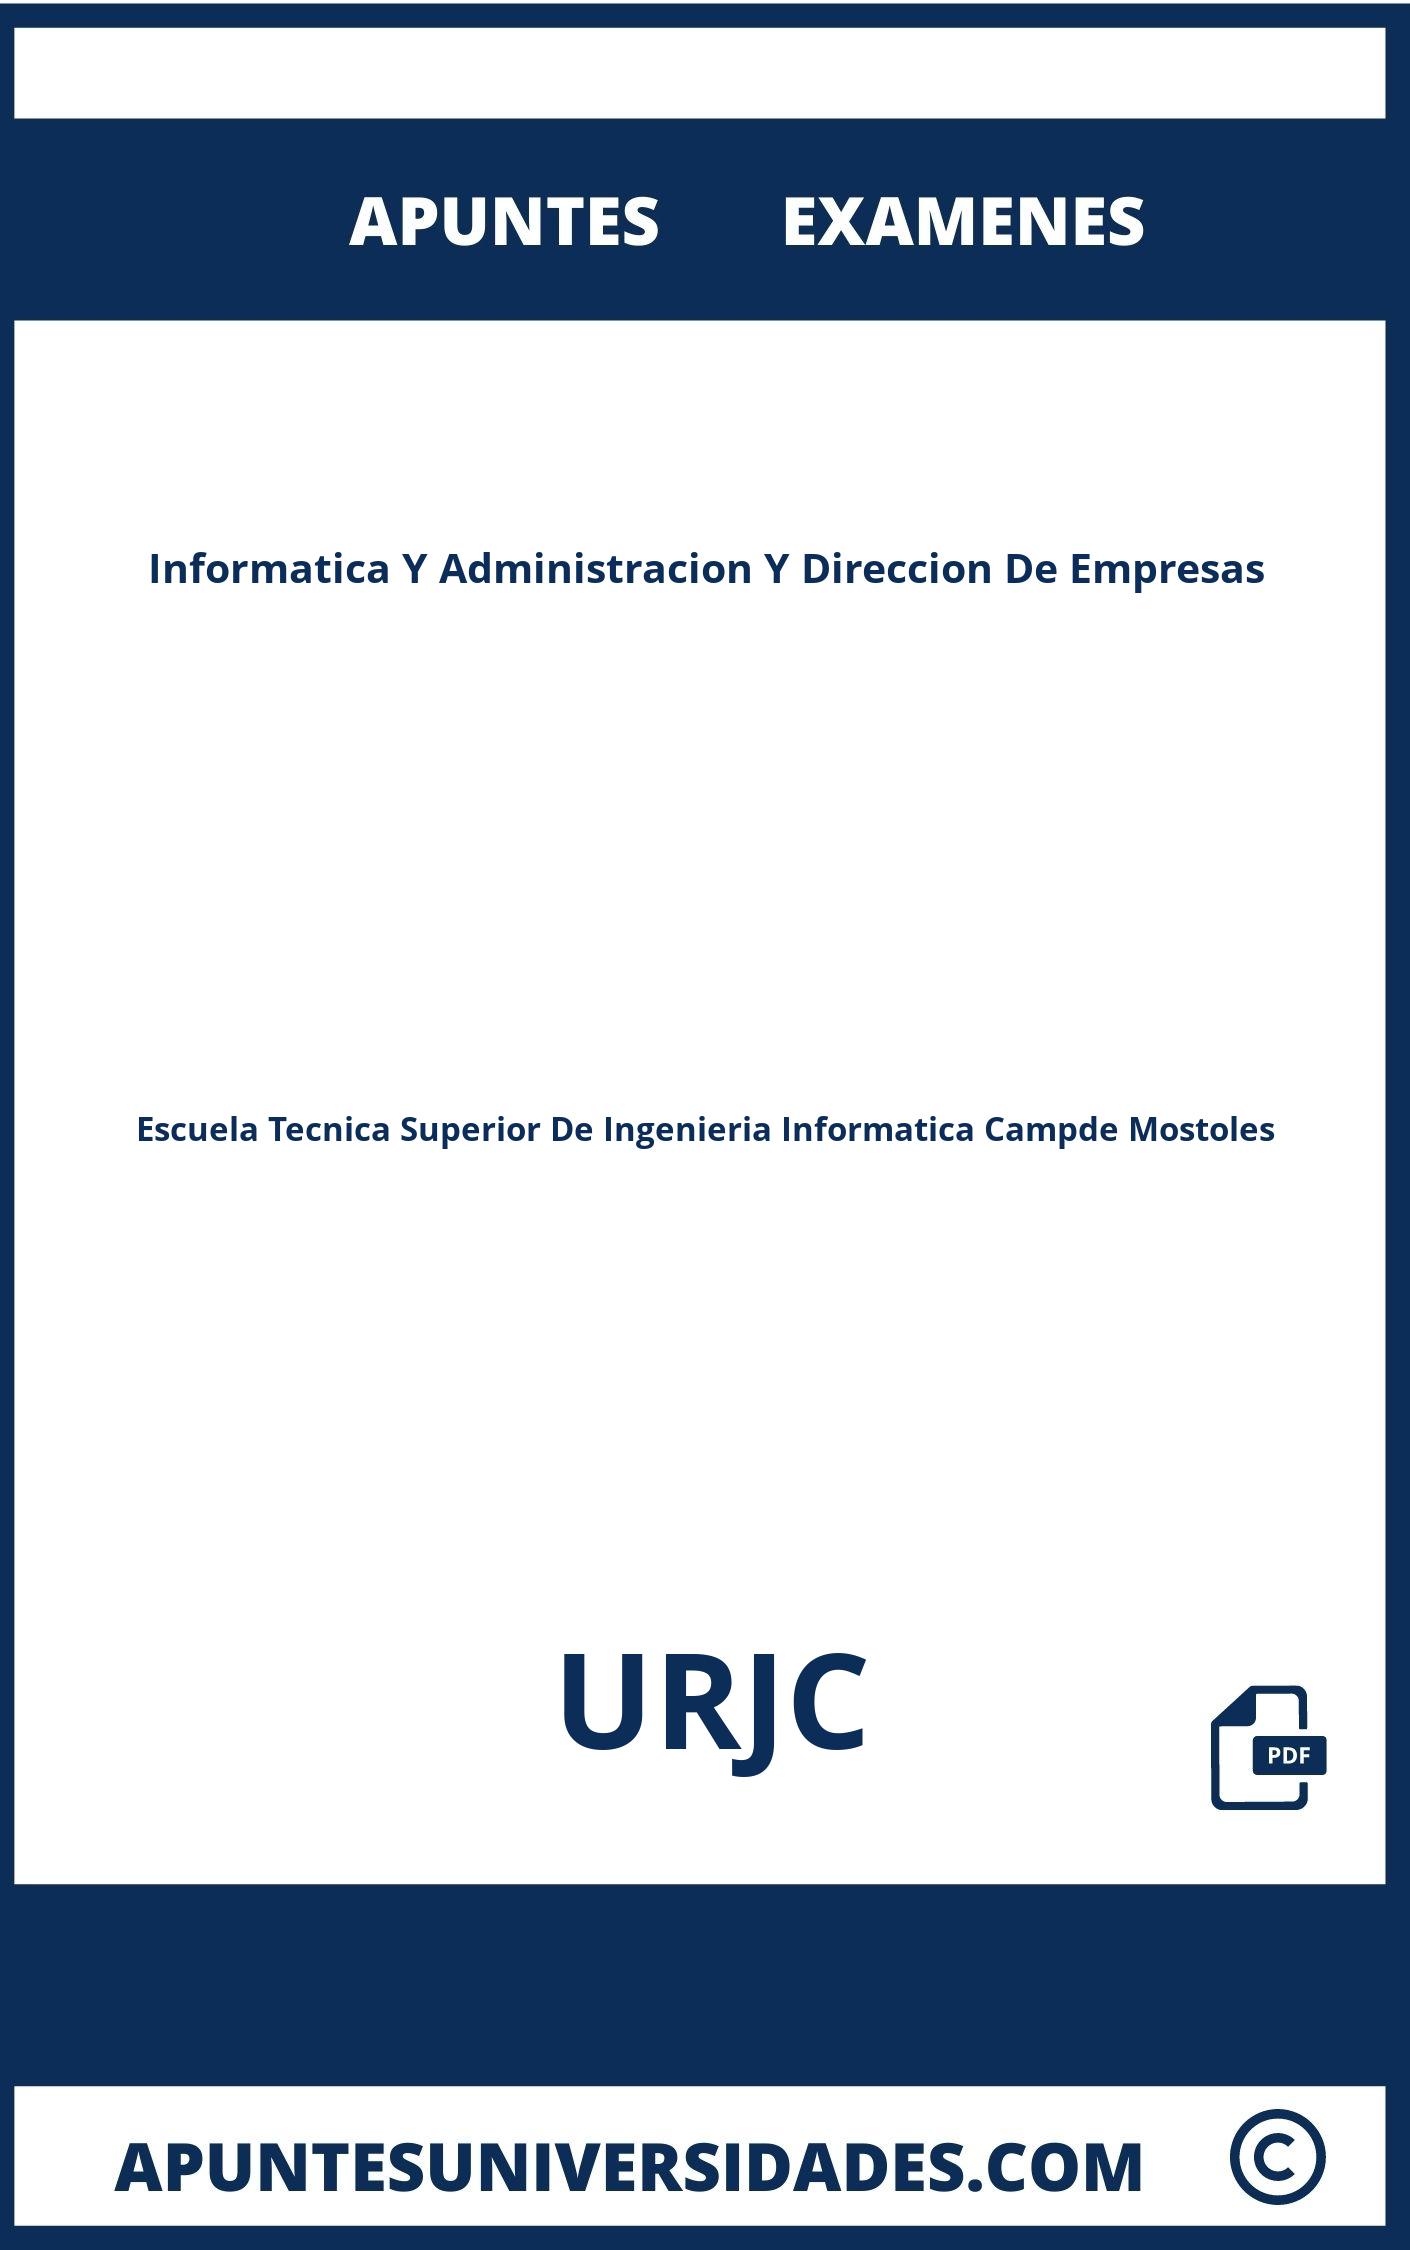 Apuntes y Examenes de Informatica Y Administracion Y Direccion De Empresas URJC